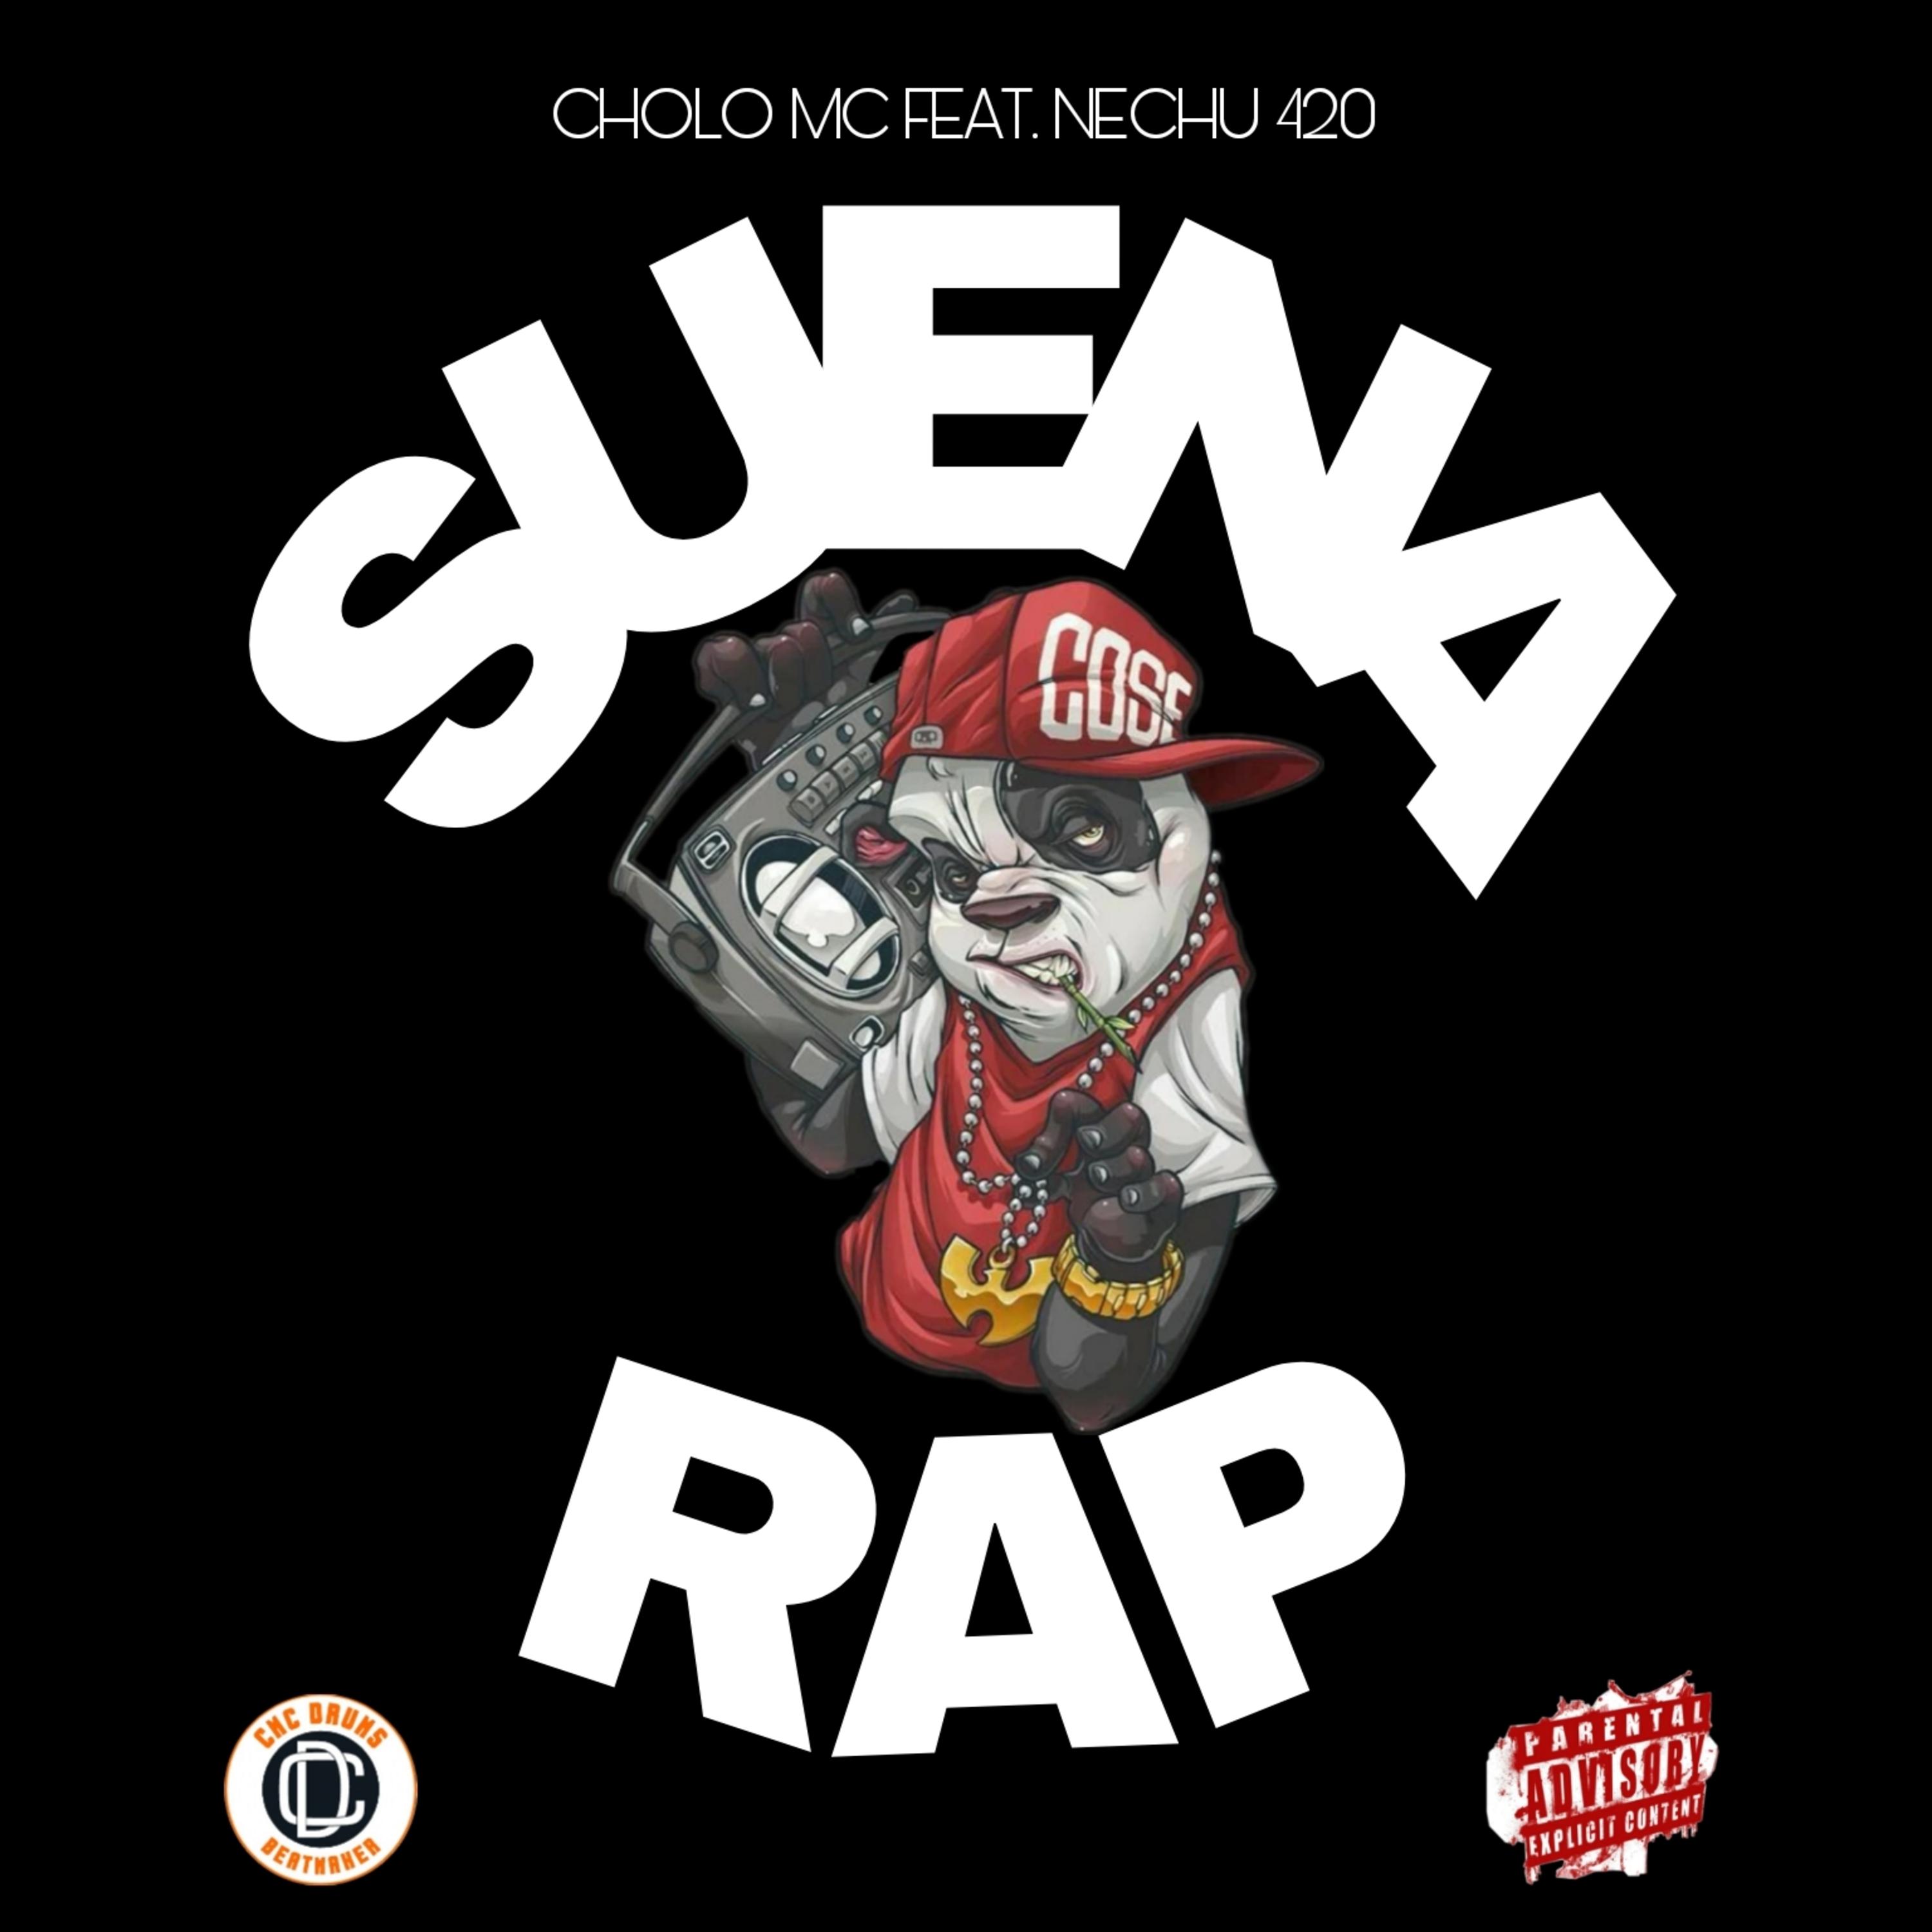 Постер альбома Suena Rap